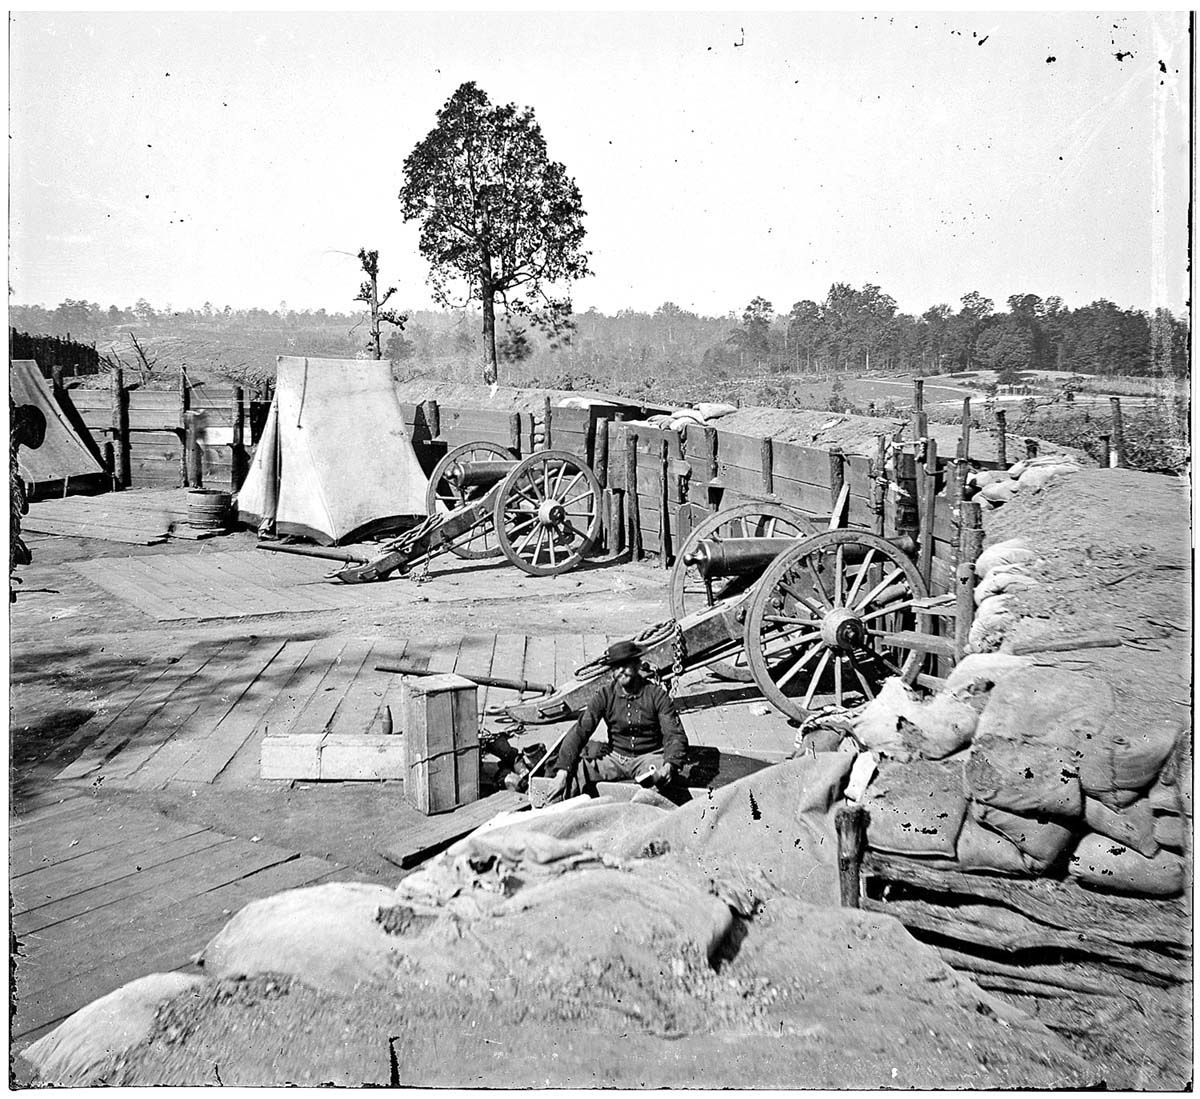 Atlanta, Georgia. Union Army soldier